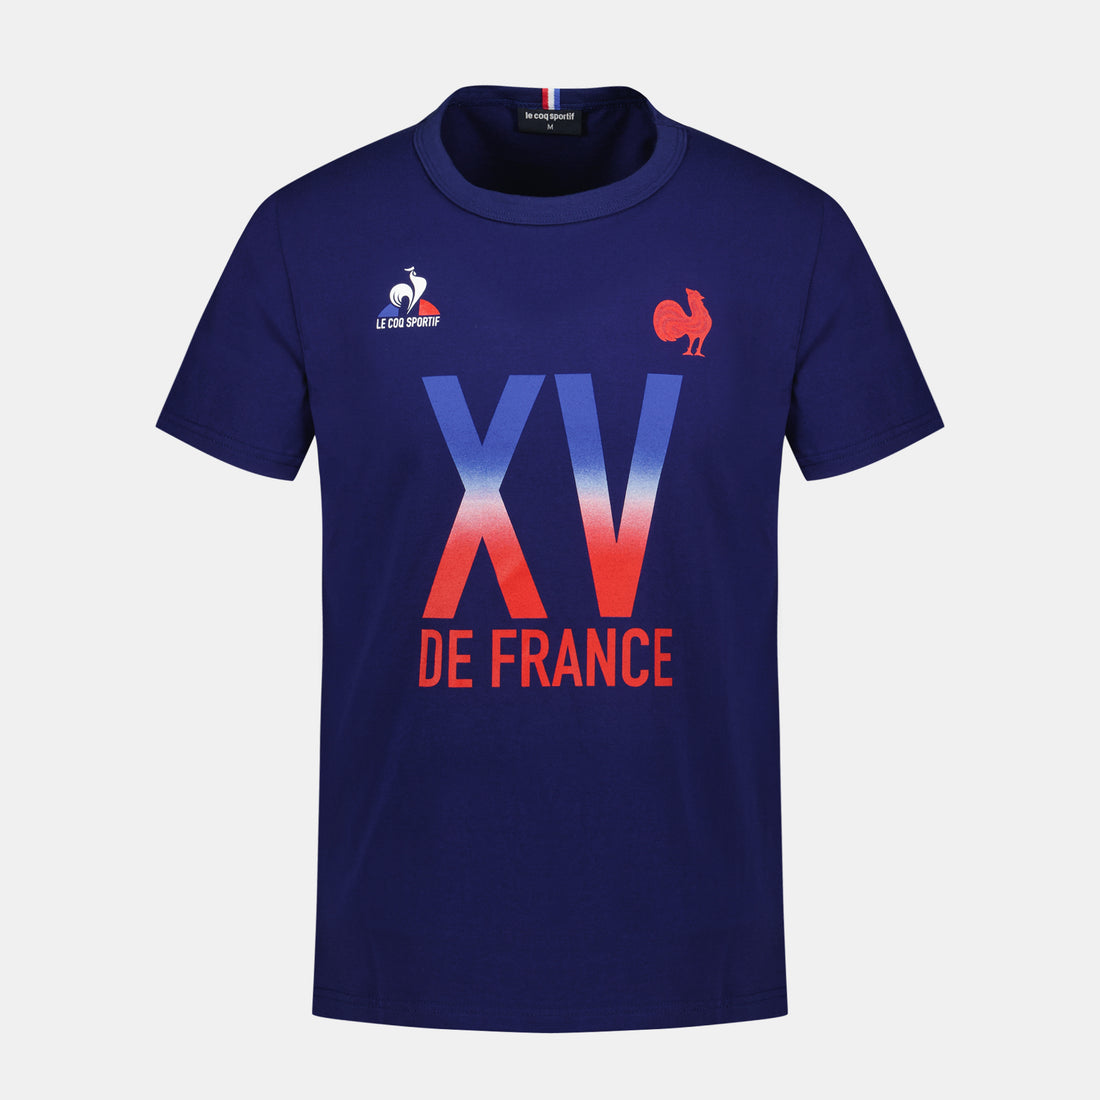 2320110-FFR FANWEAR Tee SS N°2 M bleu FR intense | T-shirt Homme XV de France